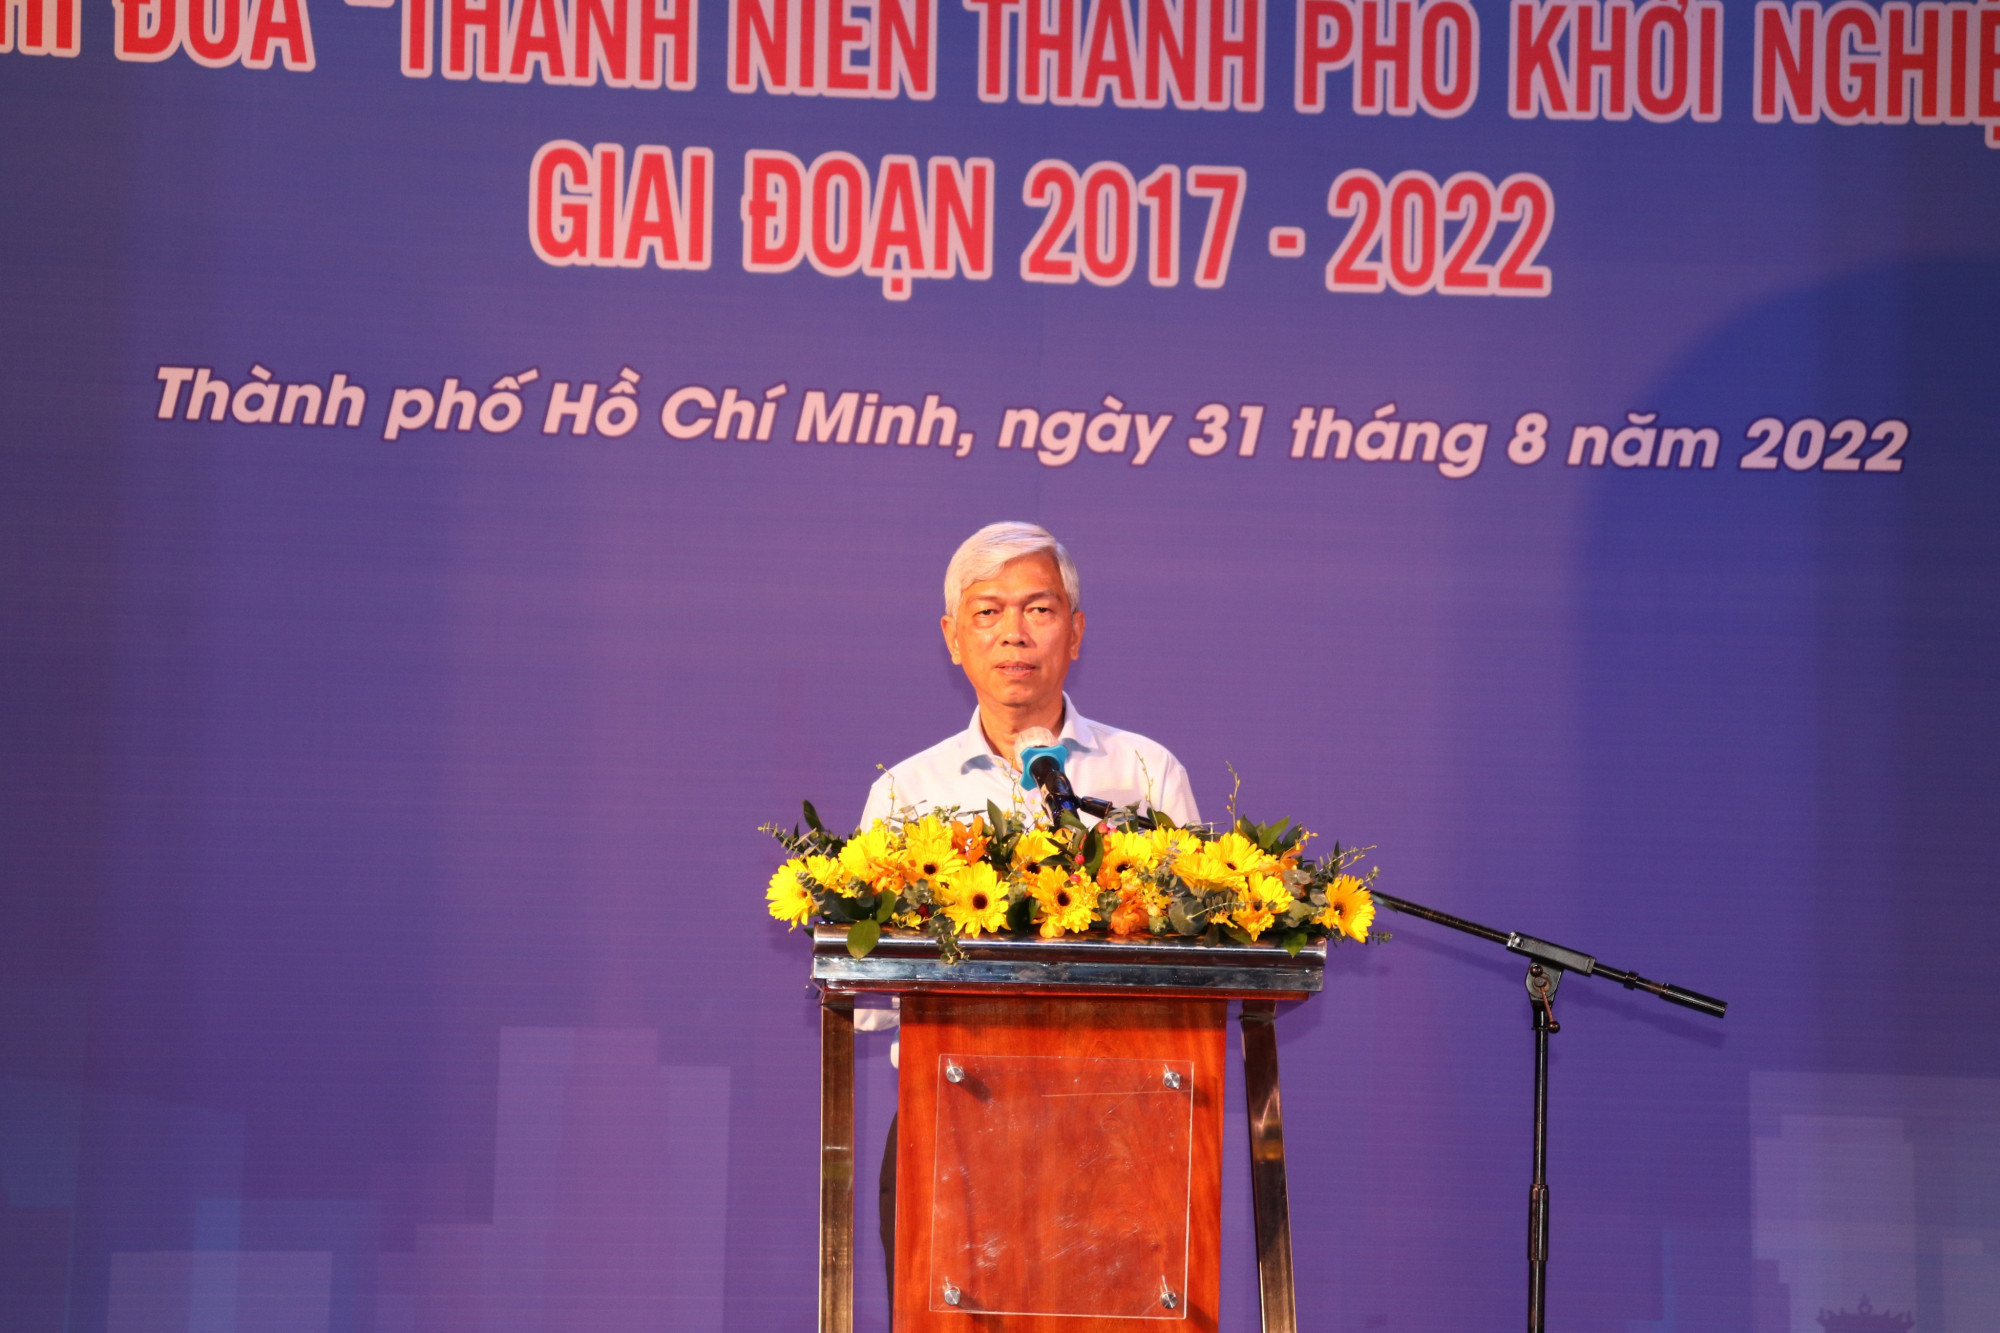 Phó Chủ tịch UBND TPHCM Võ Văn Hoan phát biểu tại hội nghị tổng kết